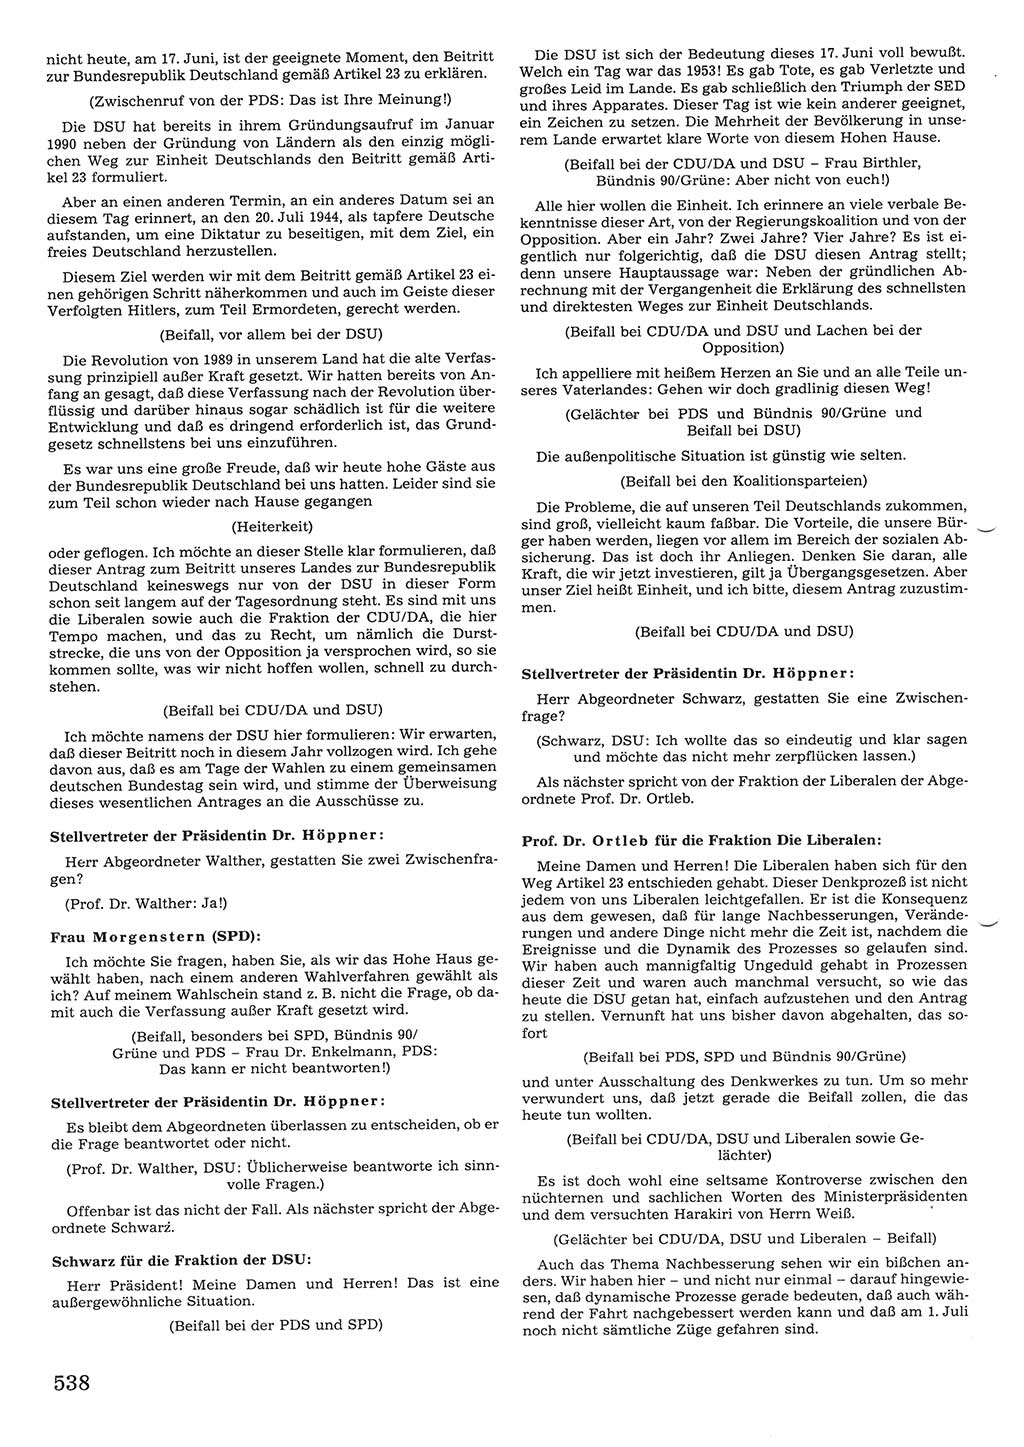 Tagungen der Volkskammer (VK) der Deutschen Demokratischen Republik (DDR), 10. Wahlperiode 1990, Seite 538 (VK. DDR 10. WP. 1990, Prot. Tg. 1-38, 5.4.-2.10.1990, S. 538)